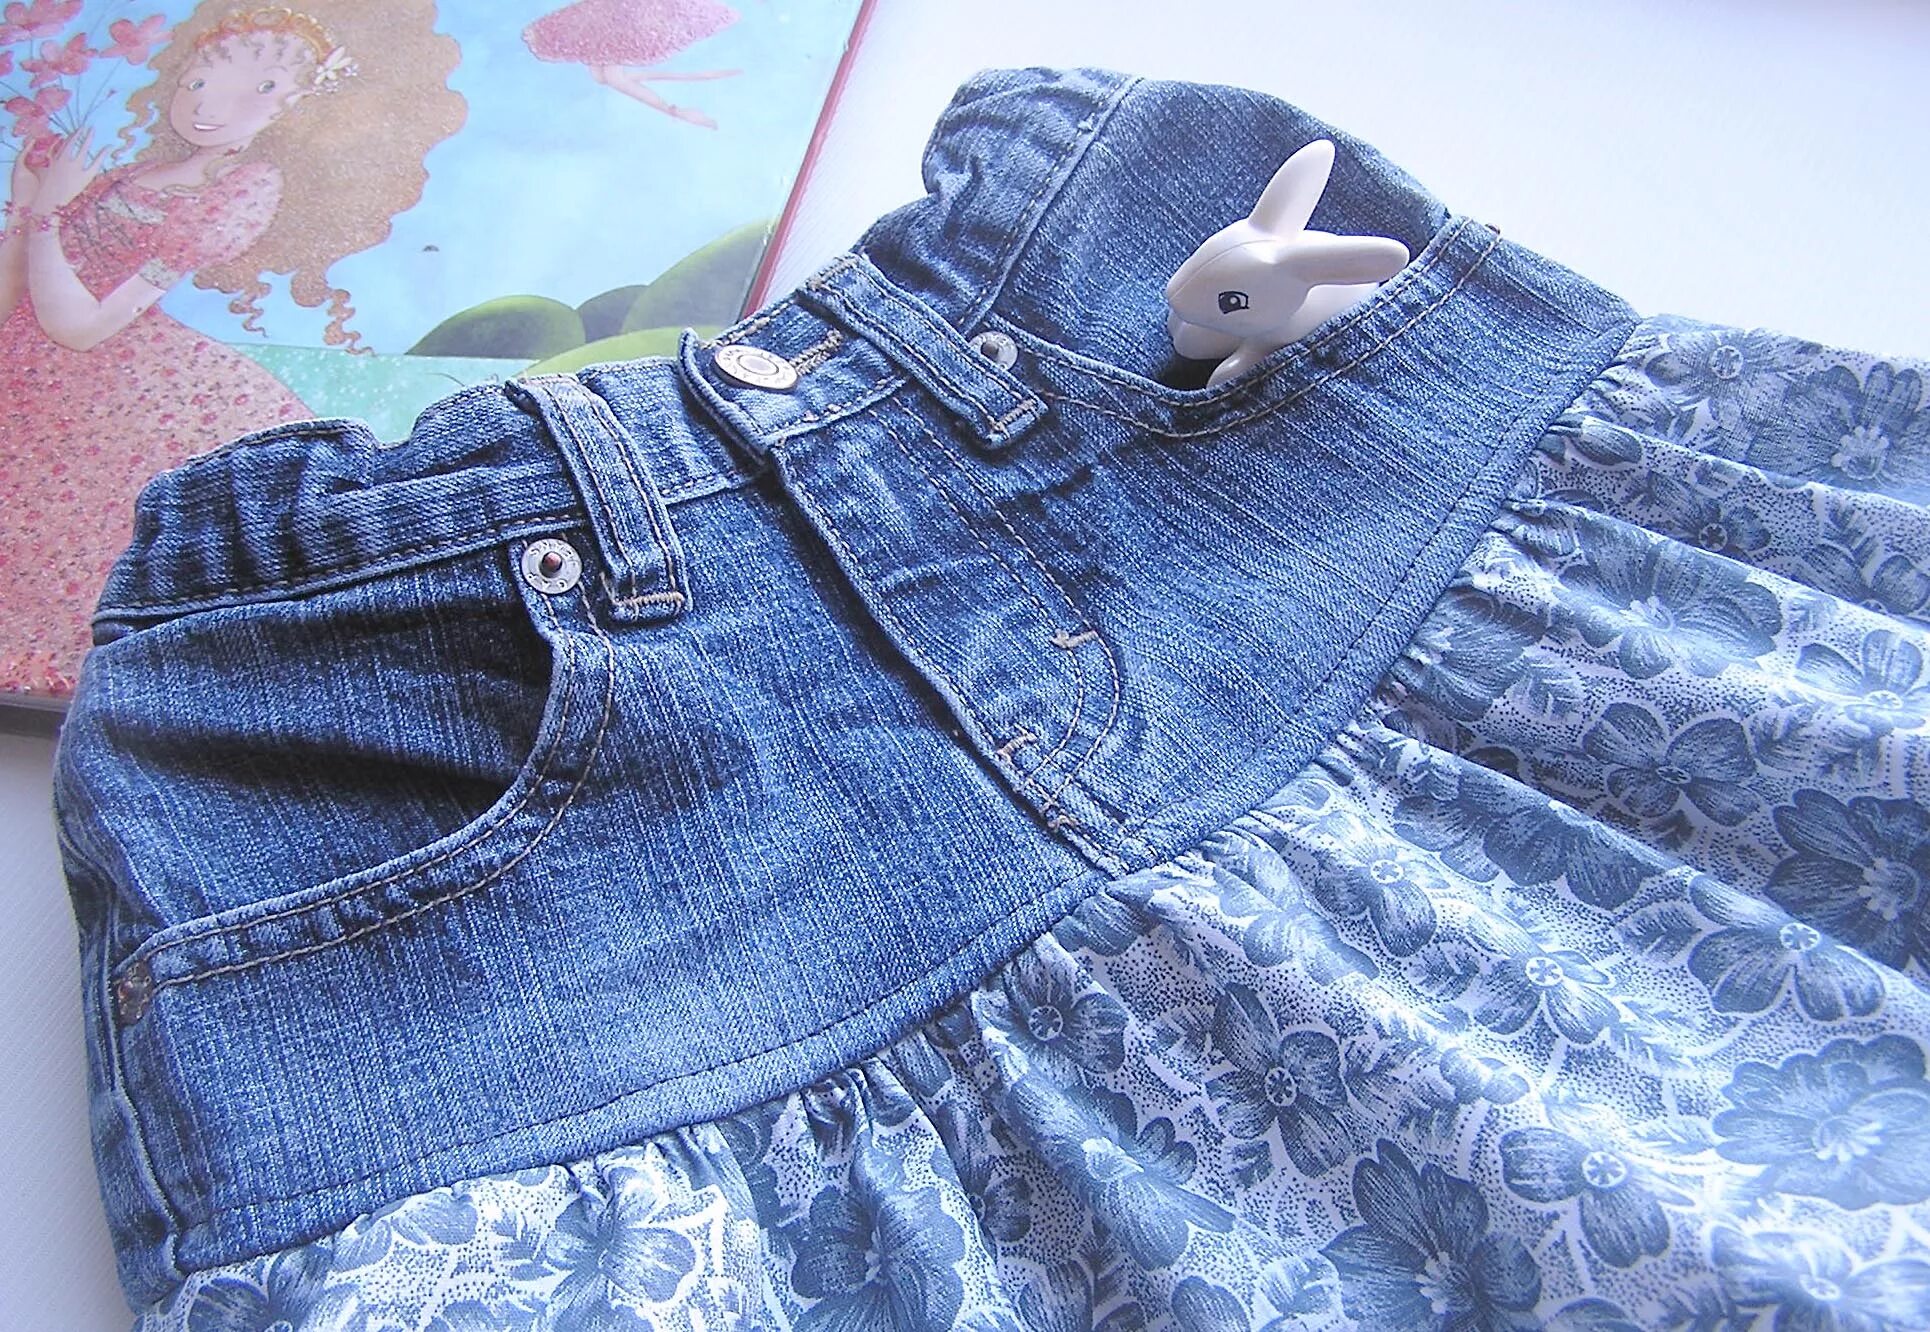 Джинсовые юбки из старых джинс. Джинсовая юбка из старых джинсов. Джинсовая юбка для девочки. Джинсовая юбка на девочку из старых джинс.